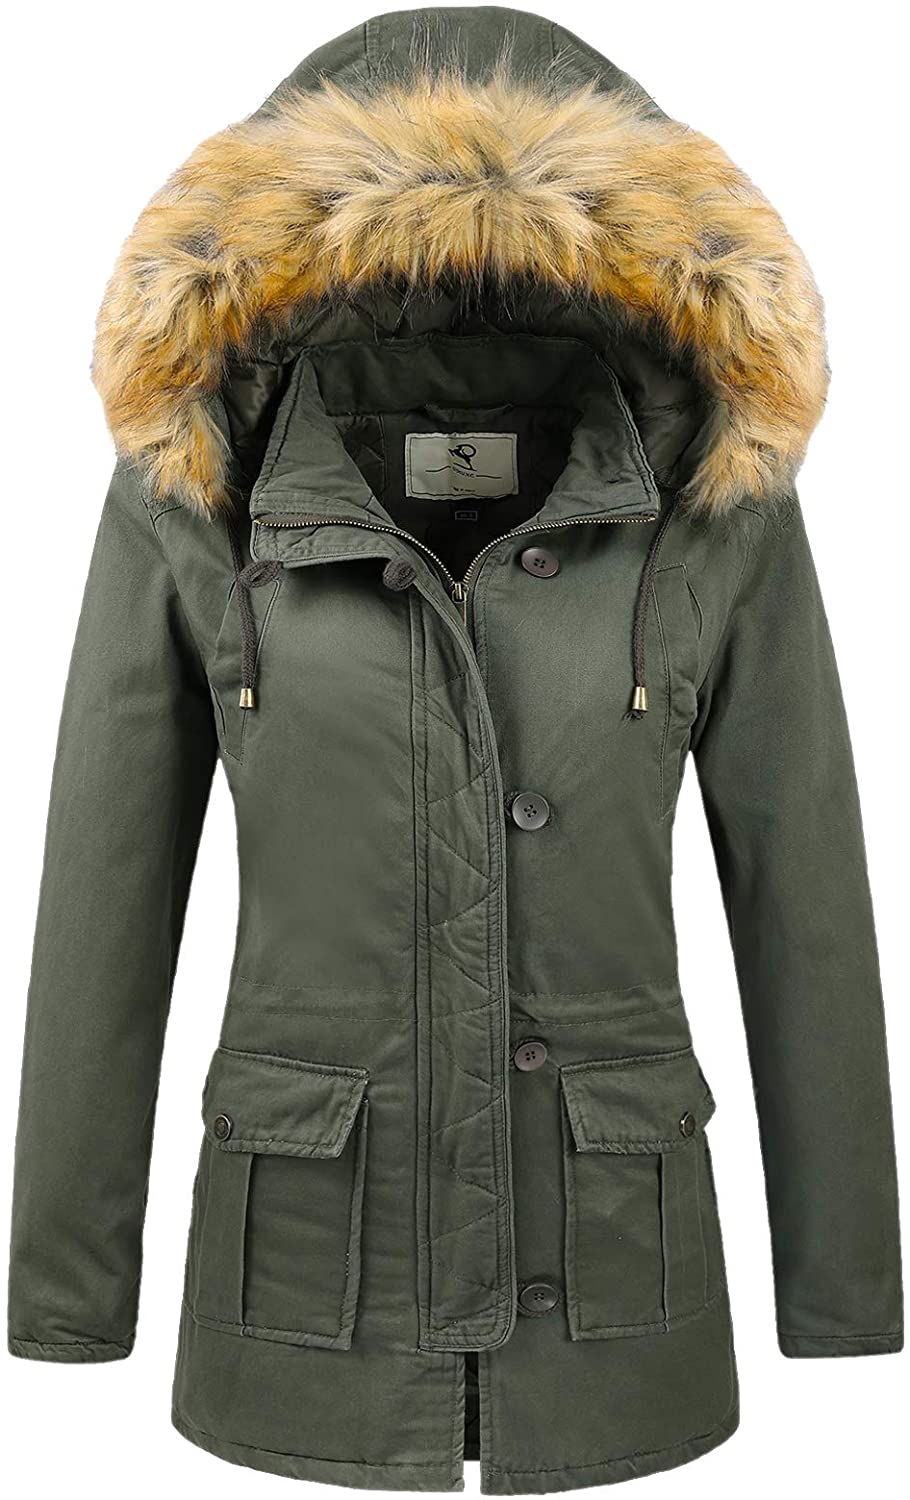 Uoiuxc Women's Warm Winter Coat Hooded Fleece Lined Parkas Jacket 